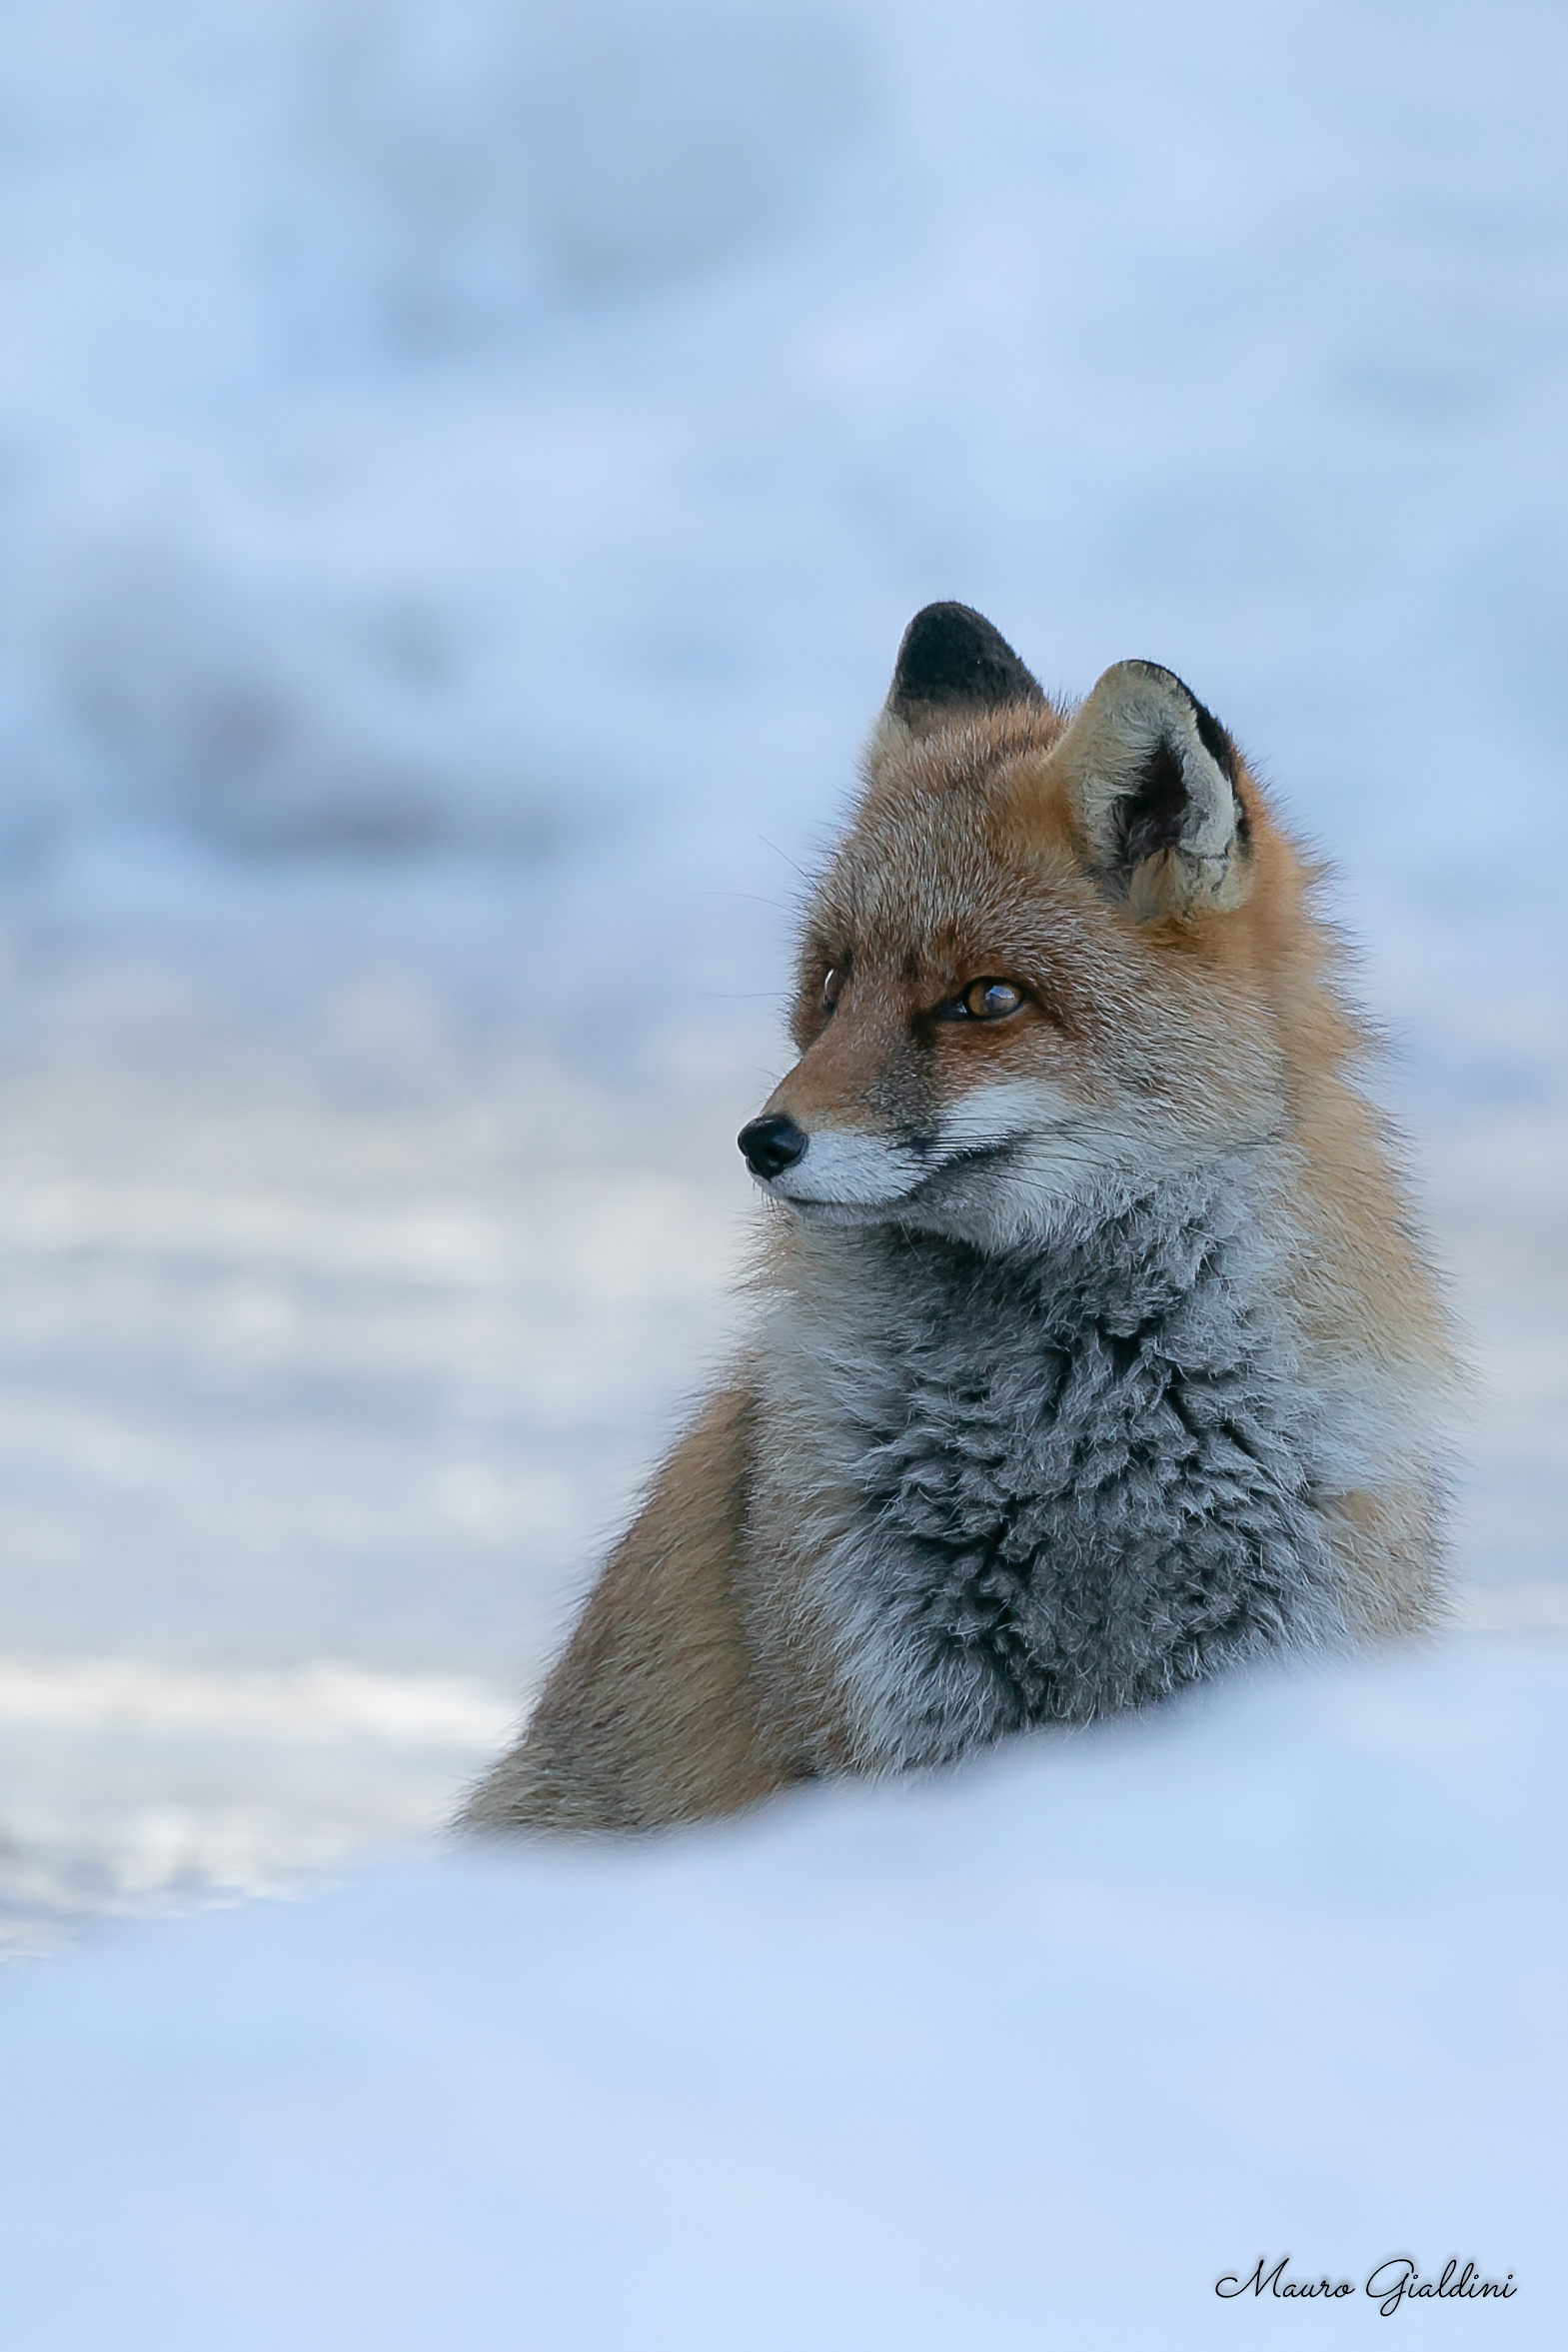 A fresh fresh fox...